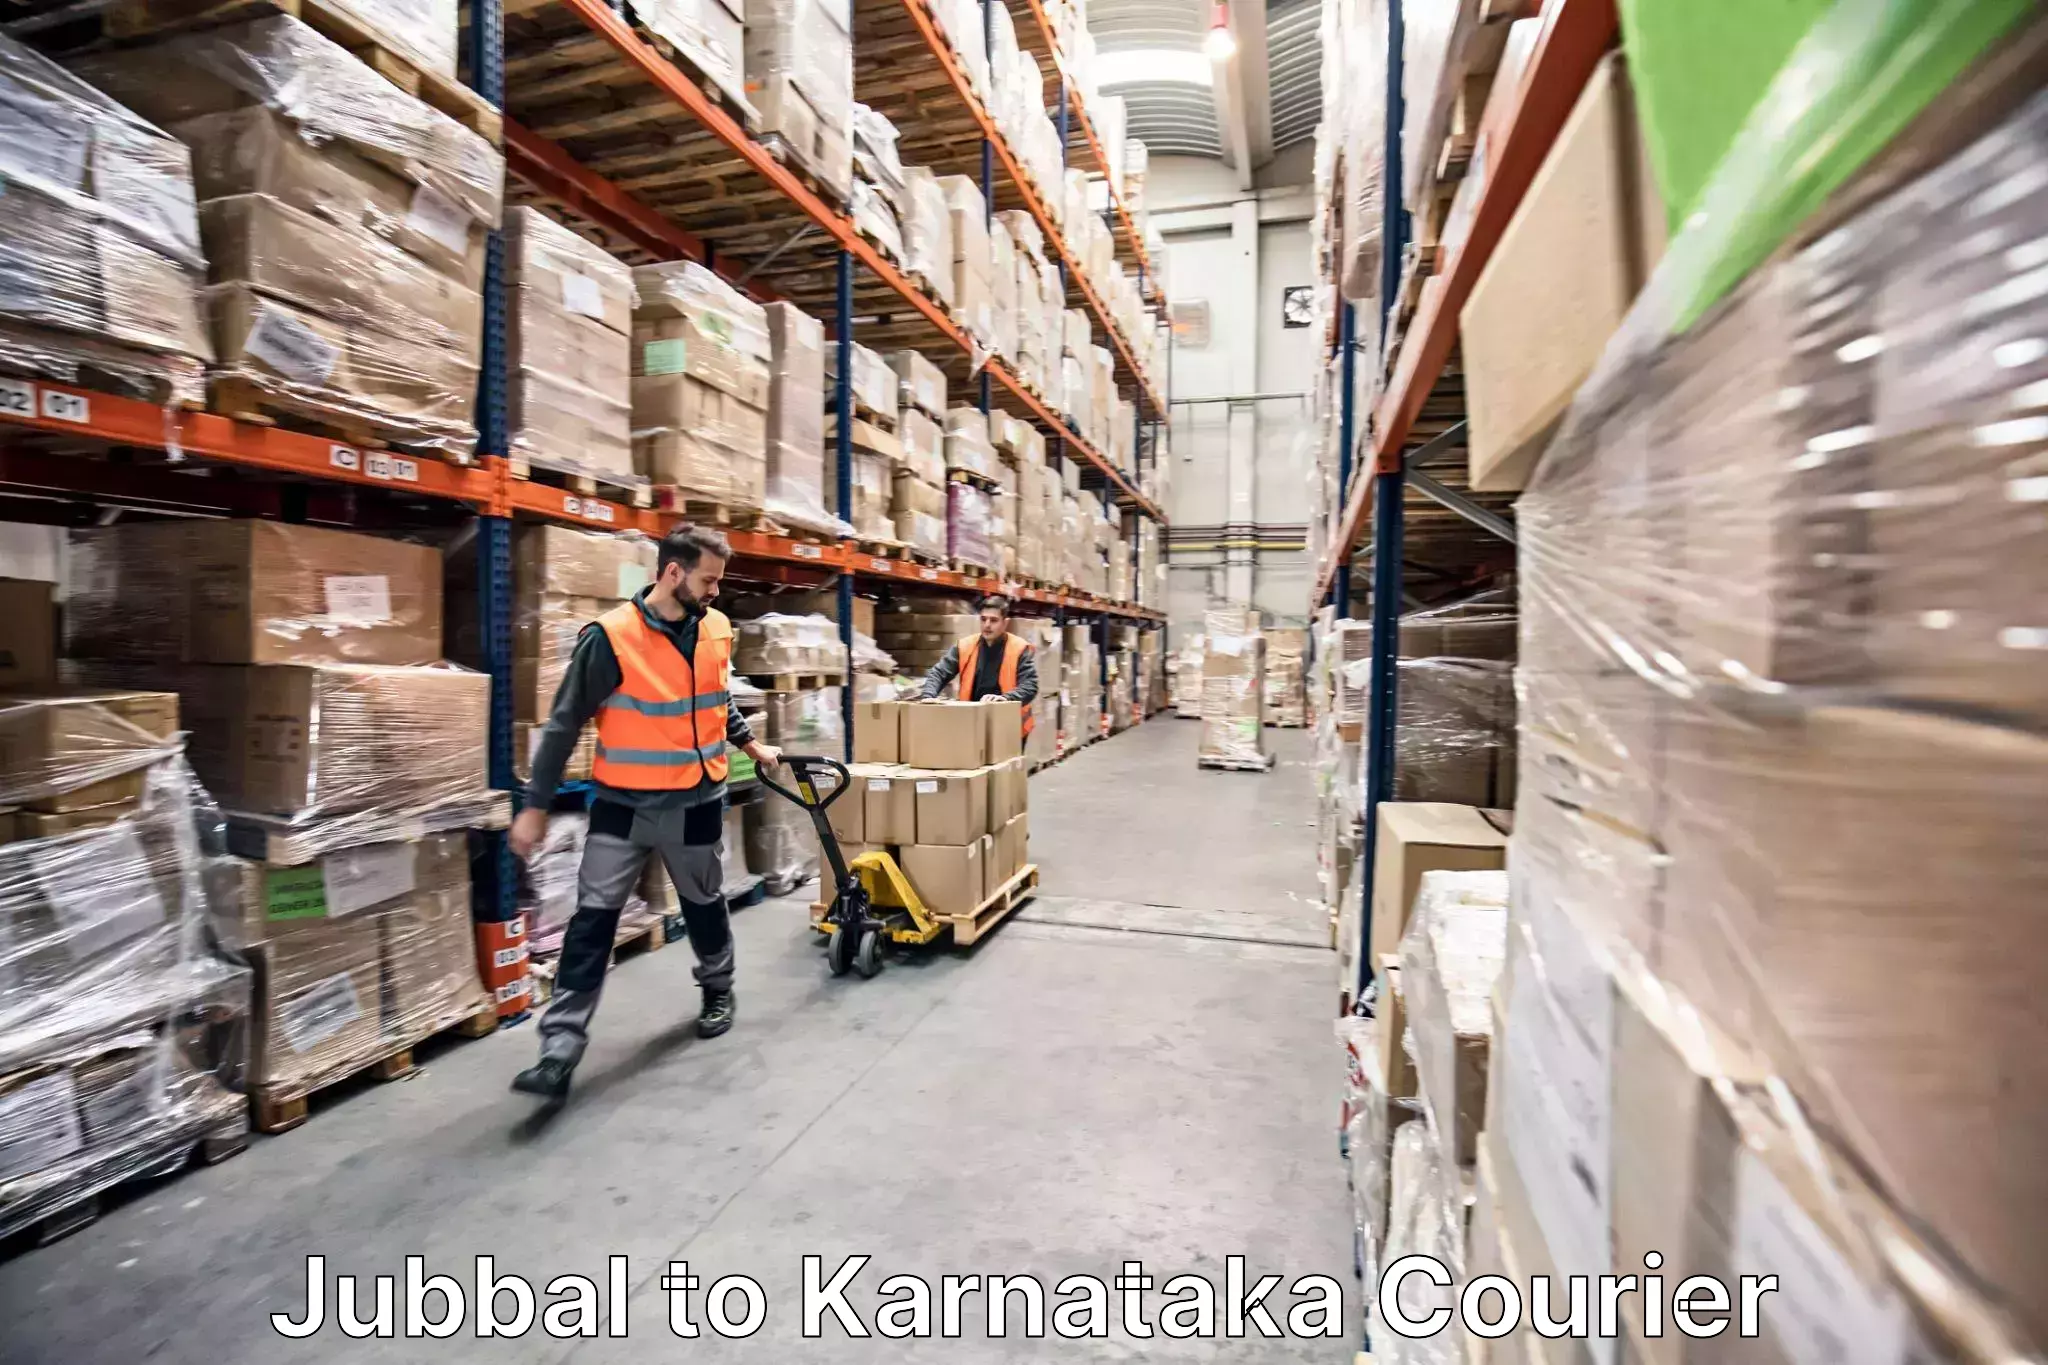 Furniture moving experts Jubbal to Ukkadagatri